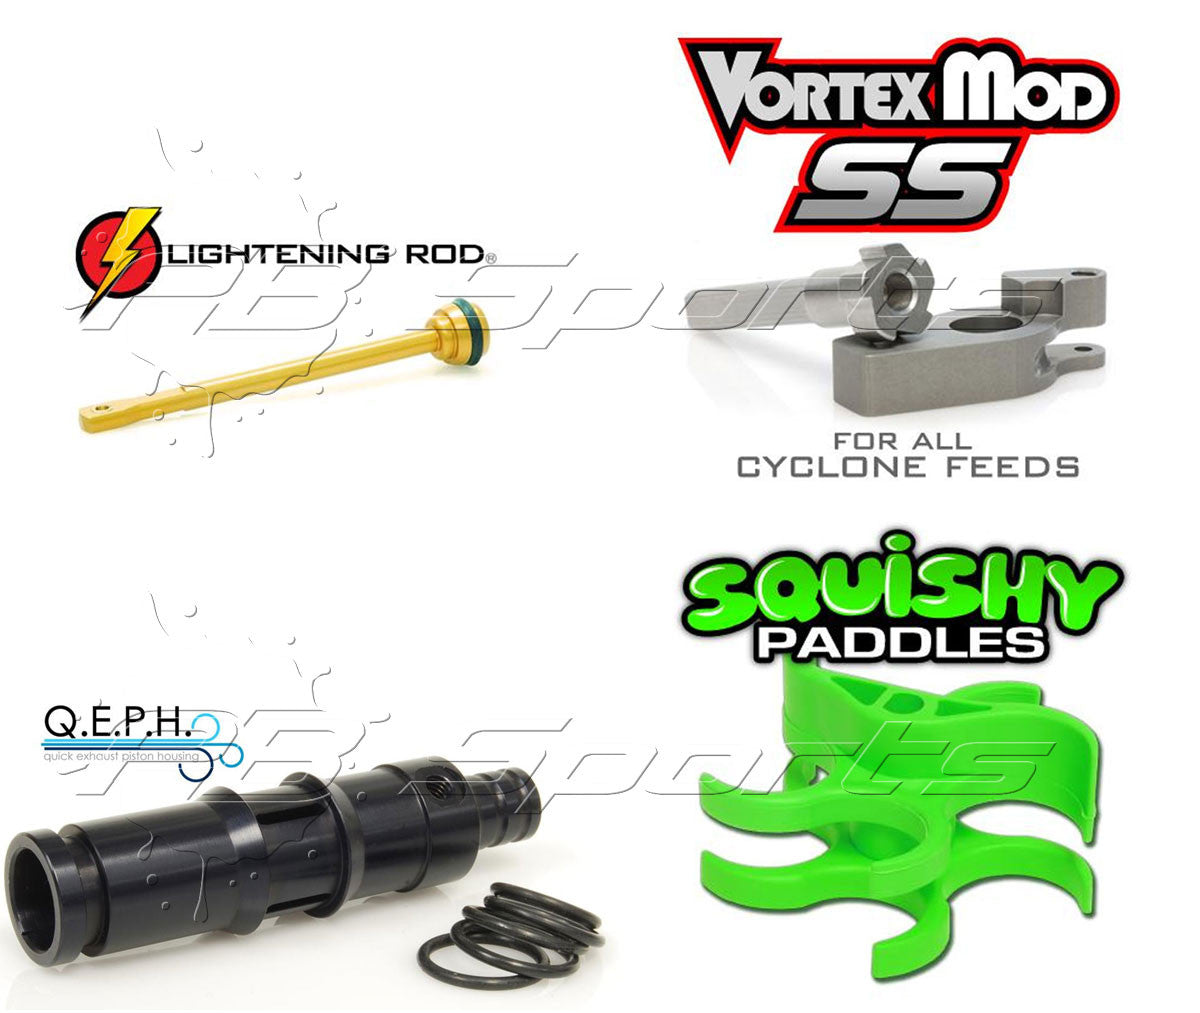 TechT Tippmann 98/A5/X7 Cyclone Vortex Mod SS + Lightening Rod + Q.E.P.H. + Squishy Paddles Upgrade Kit - TechT